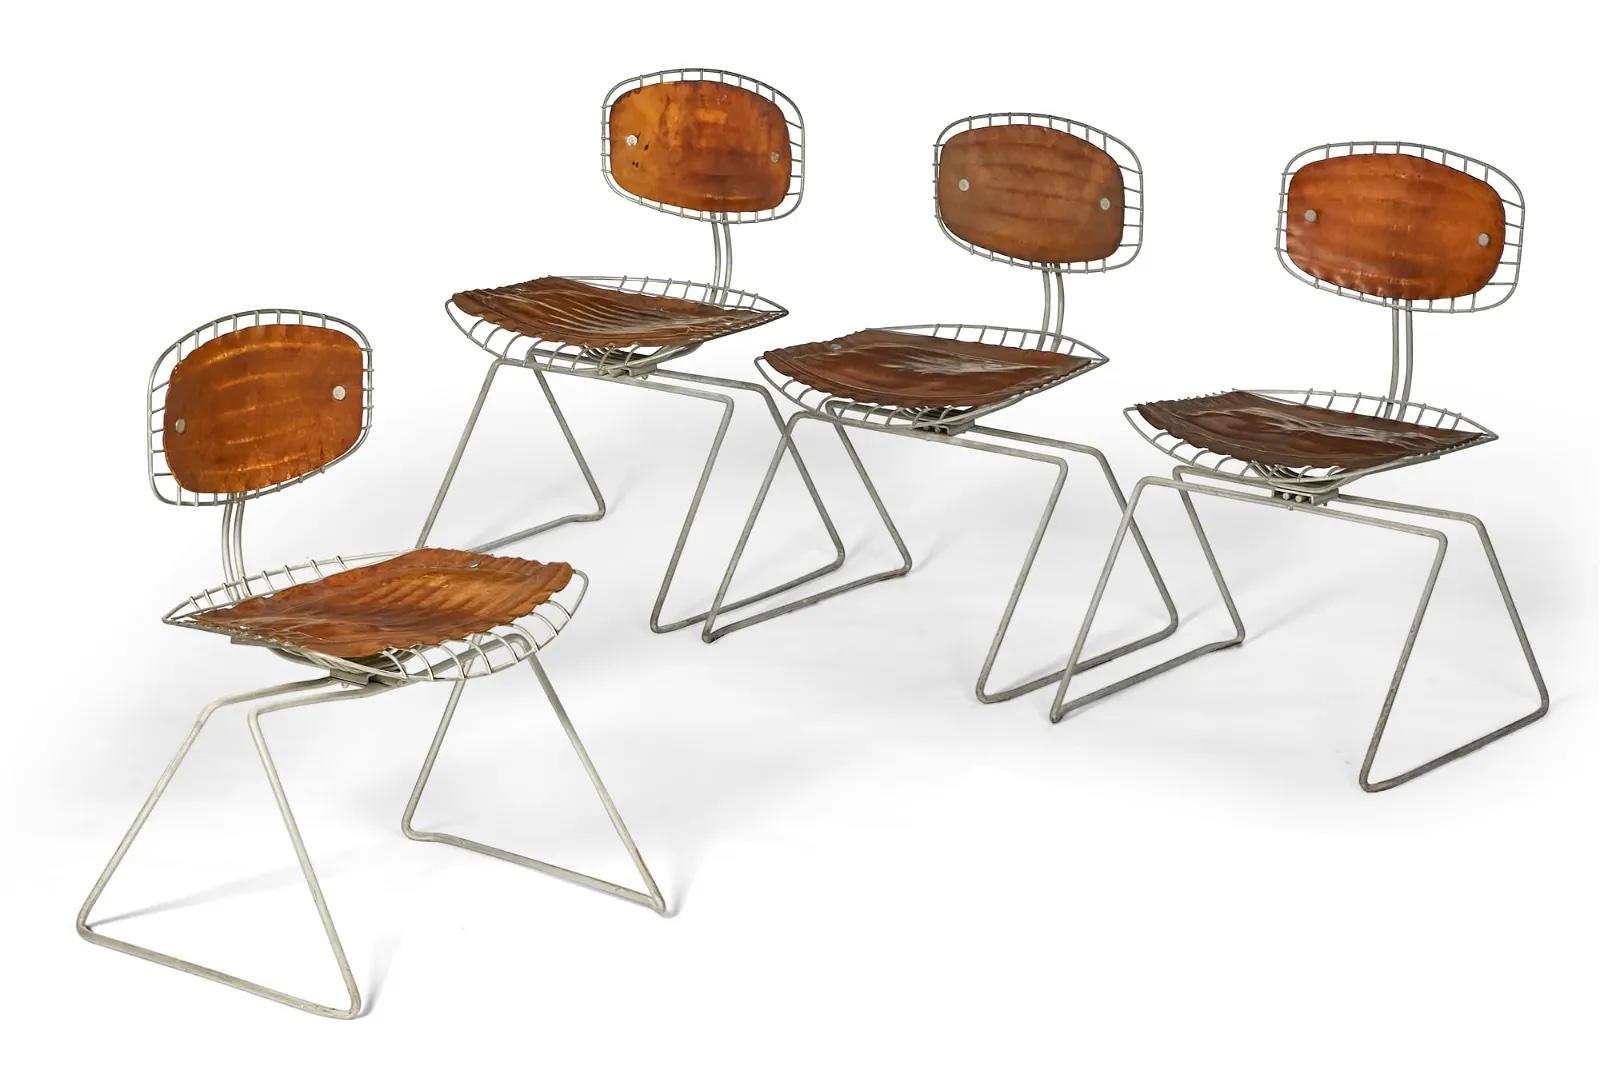 Ein zusammengehöriger Satz von vier Beaubourg-Stühlen aus Leder und Metall von Michel Cadestin und Georges Laurent aus dem Centre Georges Pompidou, Paris. Diese Stühle wurden 1976 für den Wettbewerb entworfen, bei dem es darum ging, welche Stühle im